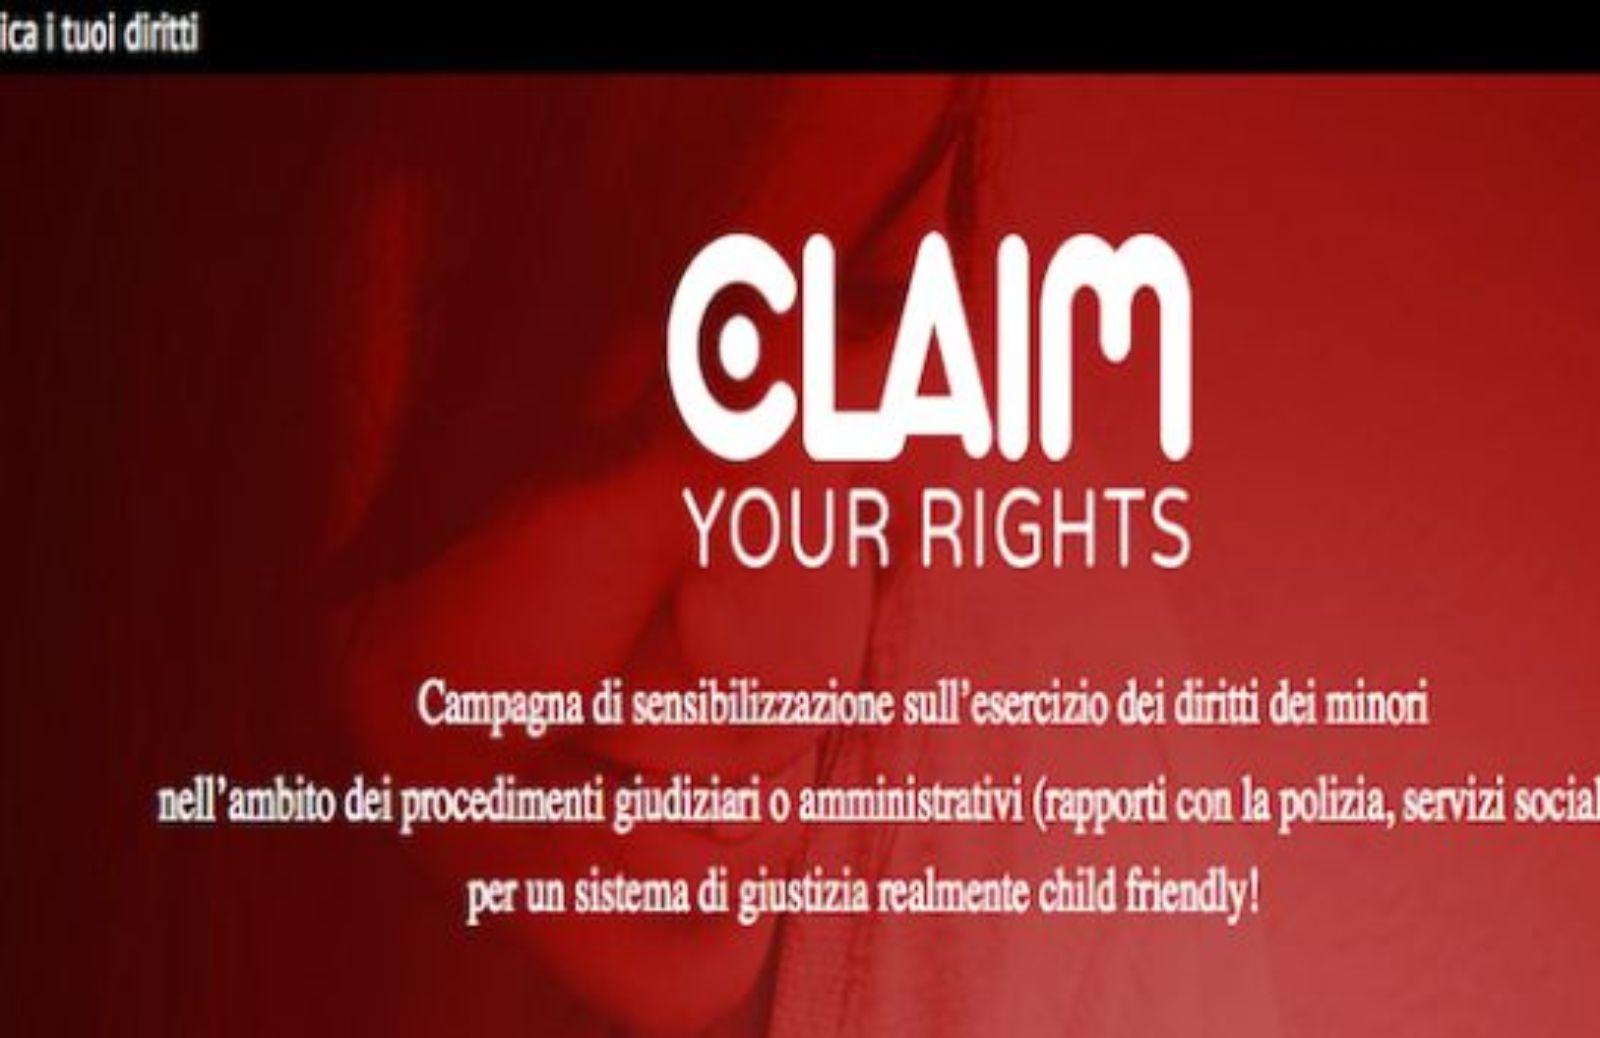 Claim your rights, in difesa dei diritti dei minori